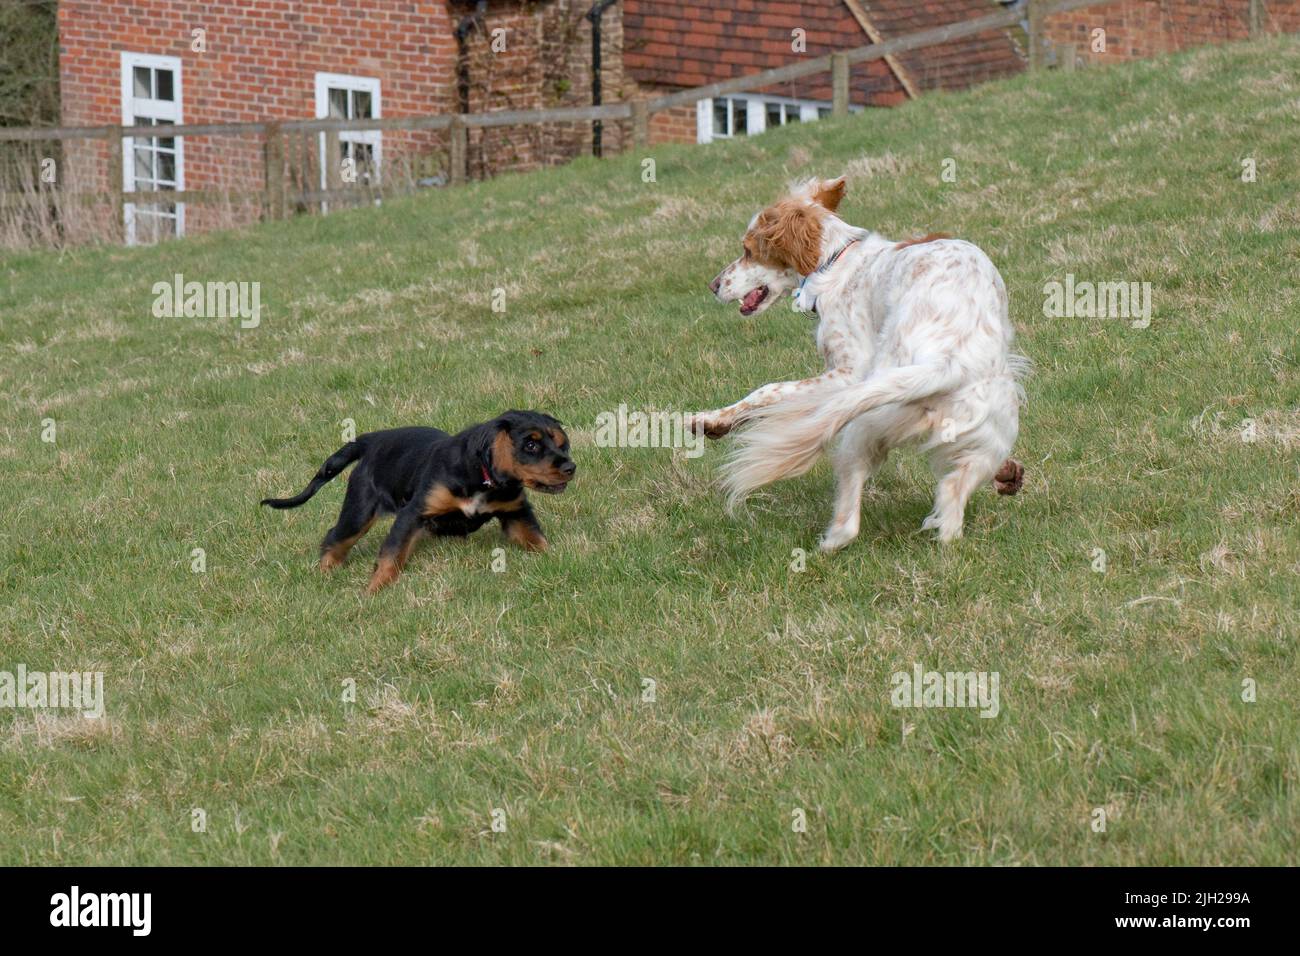 Un chien de compagnie anglais jouant avec un chiot de spaniel de cocker en activité et s'amusant malgré leur taille et leur différence d'âge, Berkshire, avril Banque D'Images